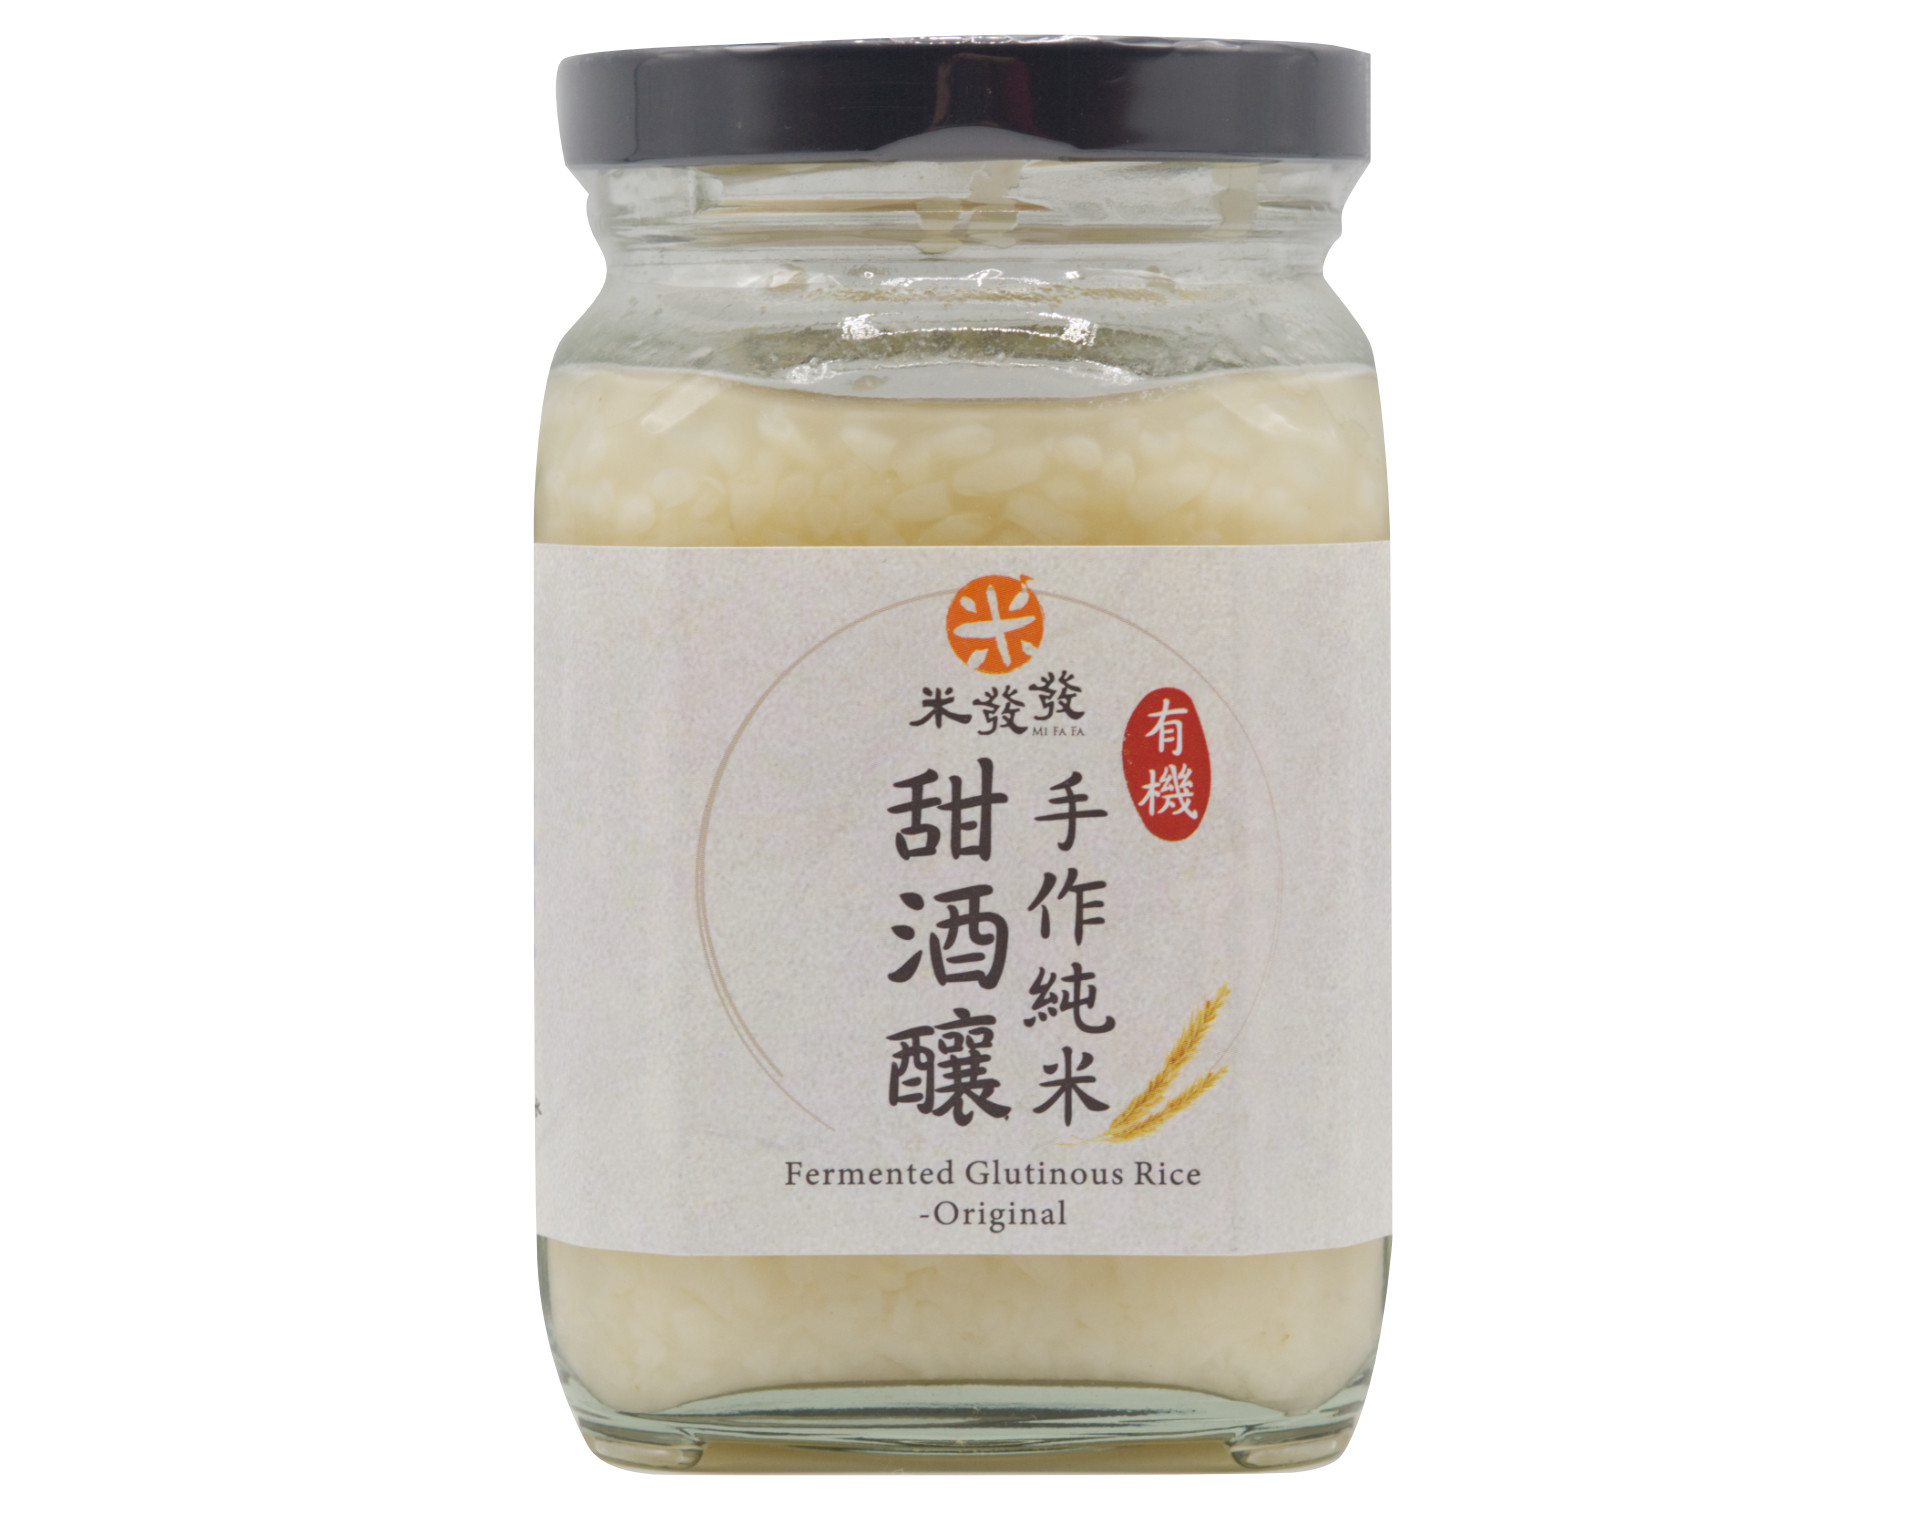 米發發 桂花純米甜酒釀 Fermented Glutionous Rice-Osmanthus Flavor